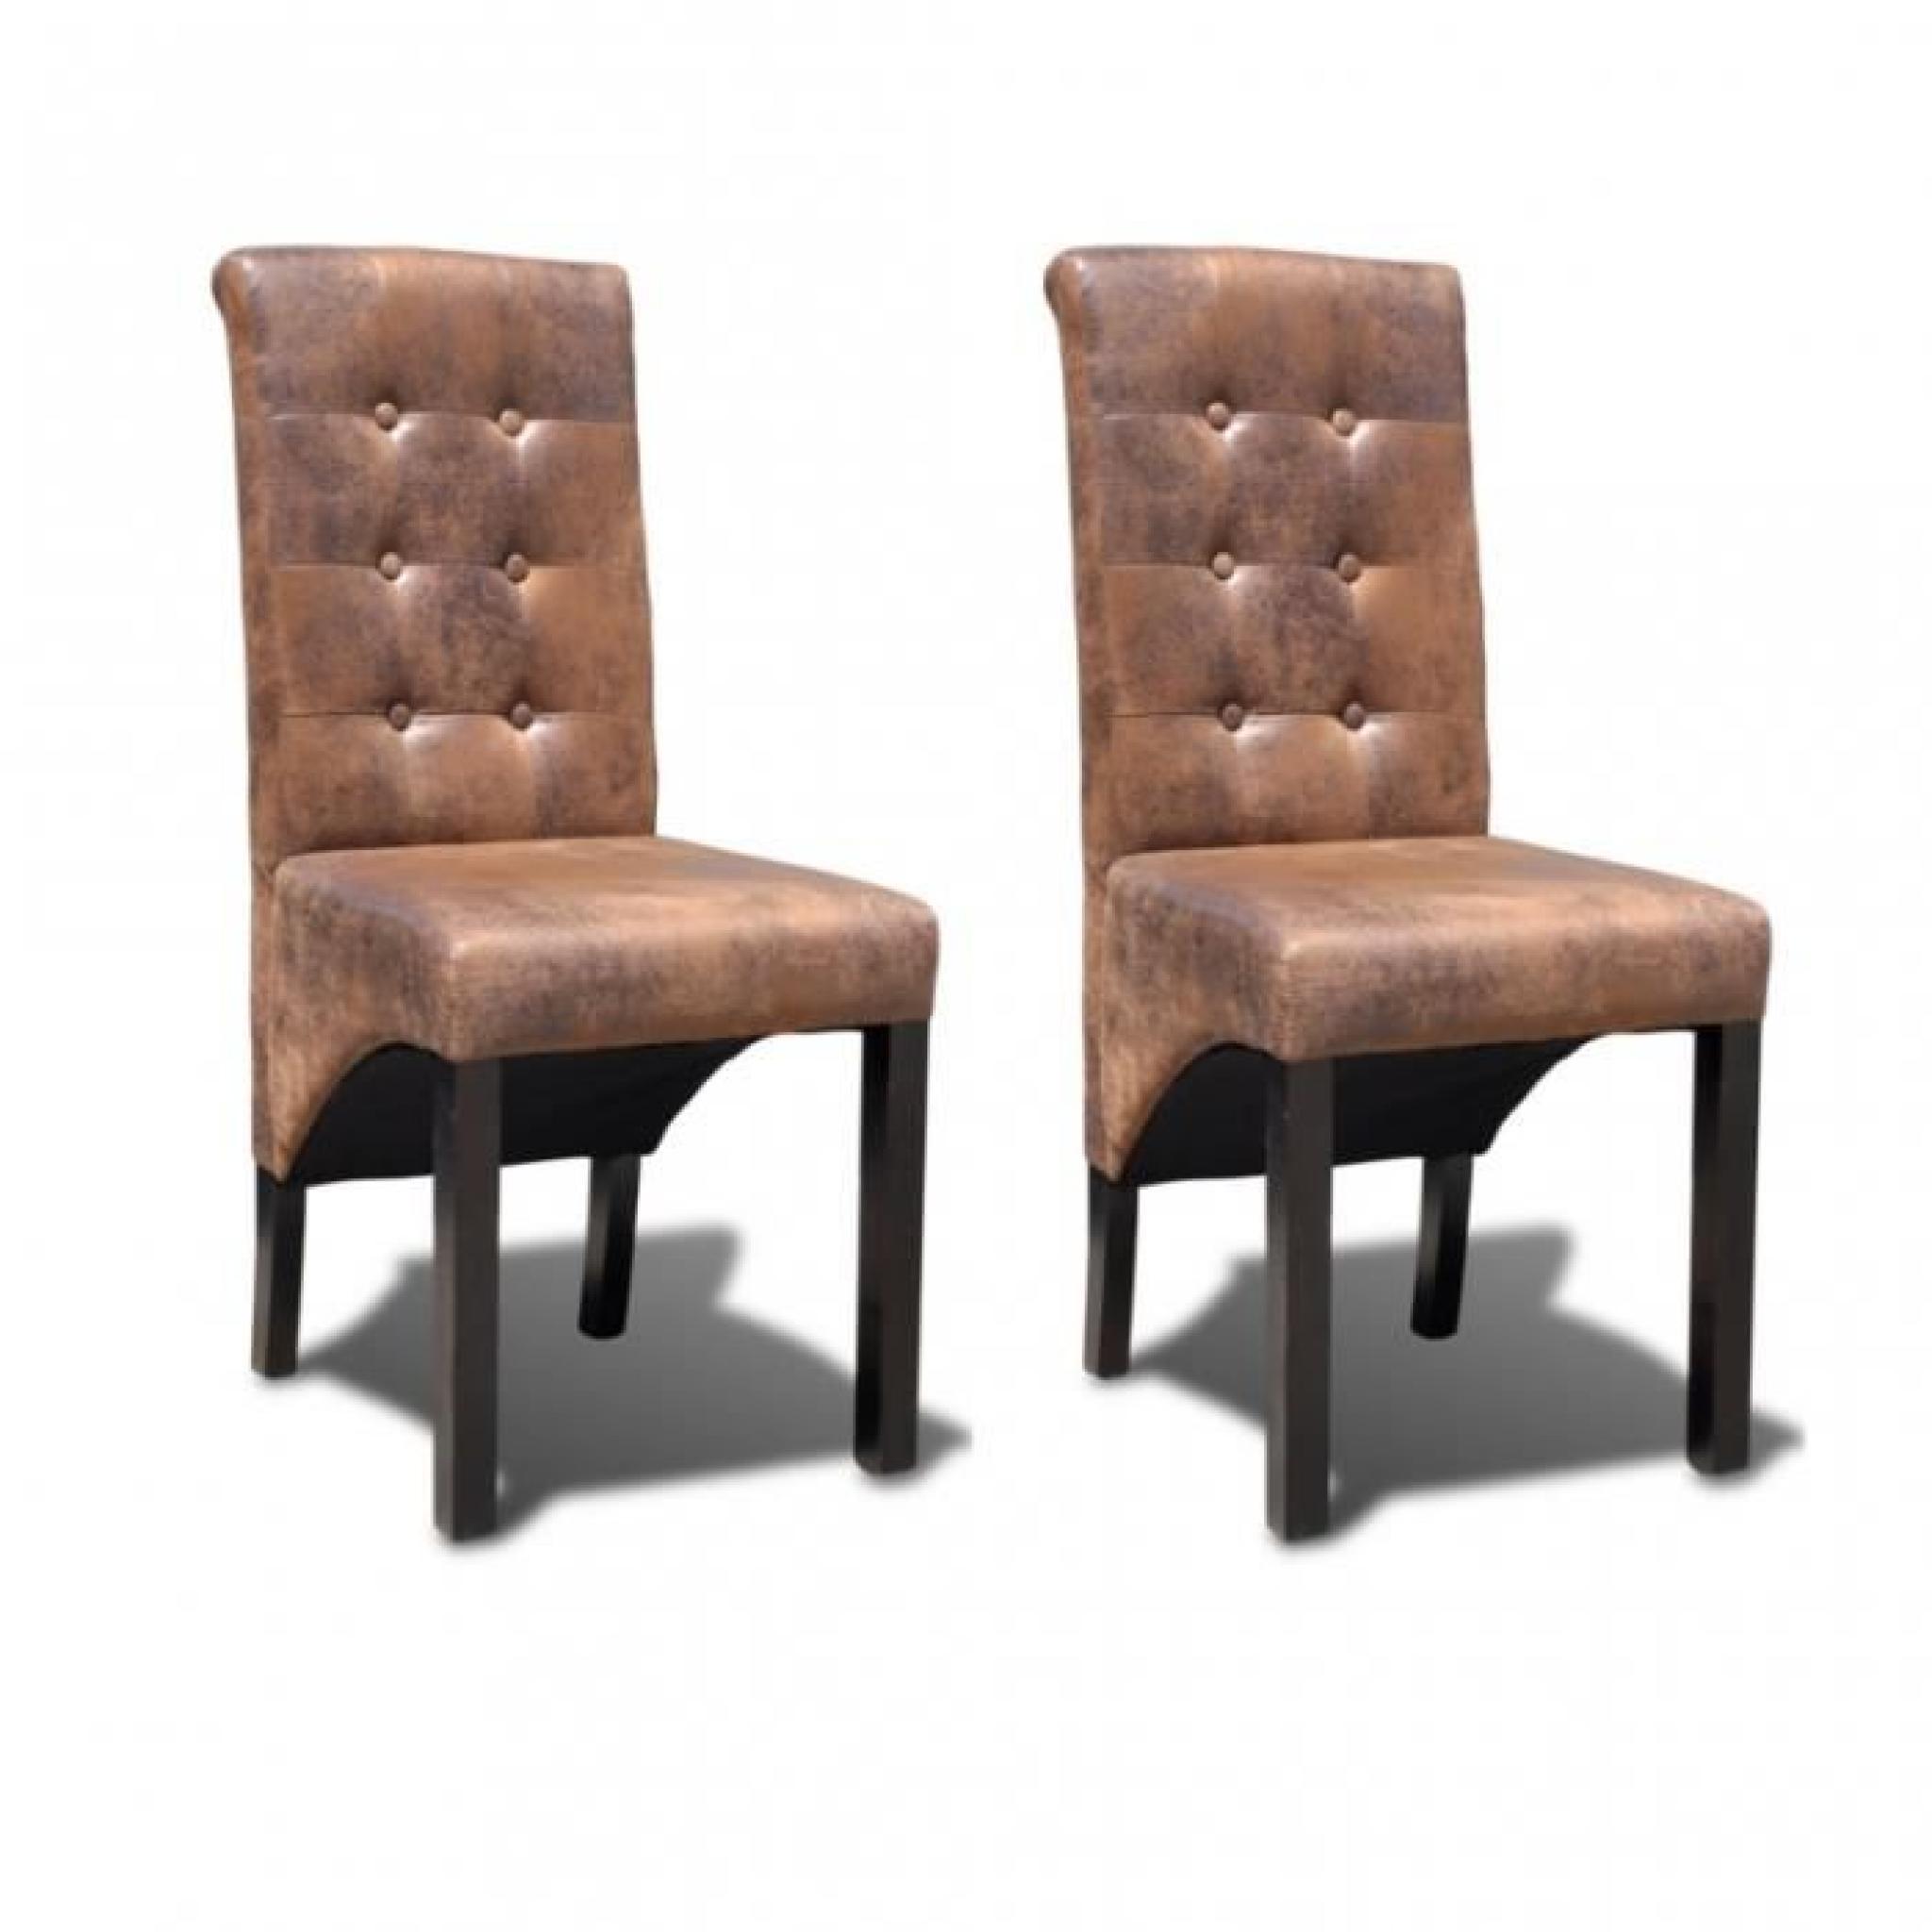 Ce set de chaises de salle à manger, d'un design élégant, est un point de convergence de regards dans votre cuisine ou salle à ma...